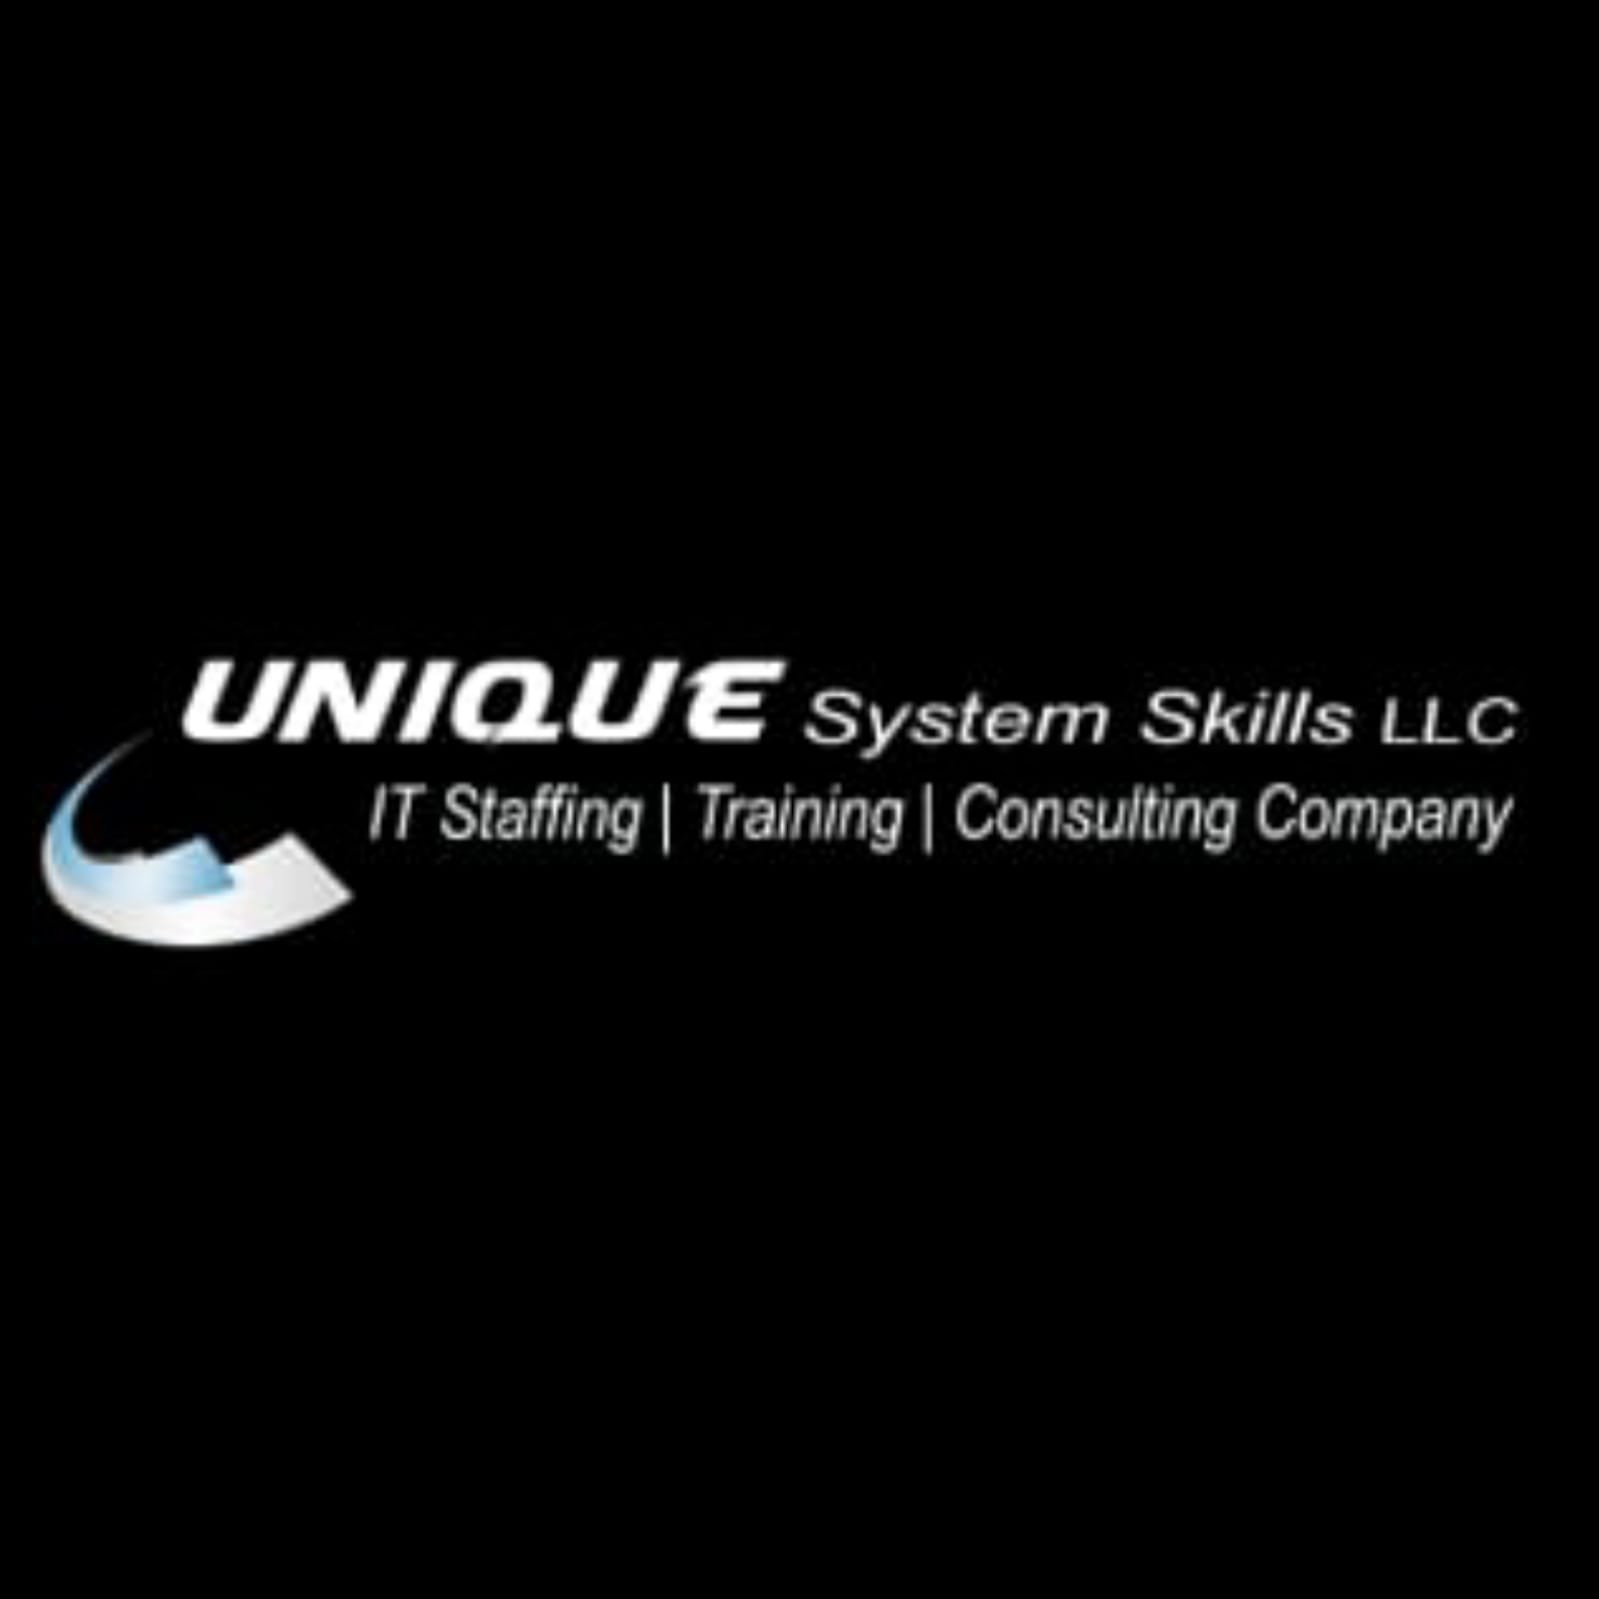 Best Software Training Institute in Pune| IT Training | Unique System Skills